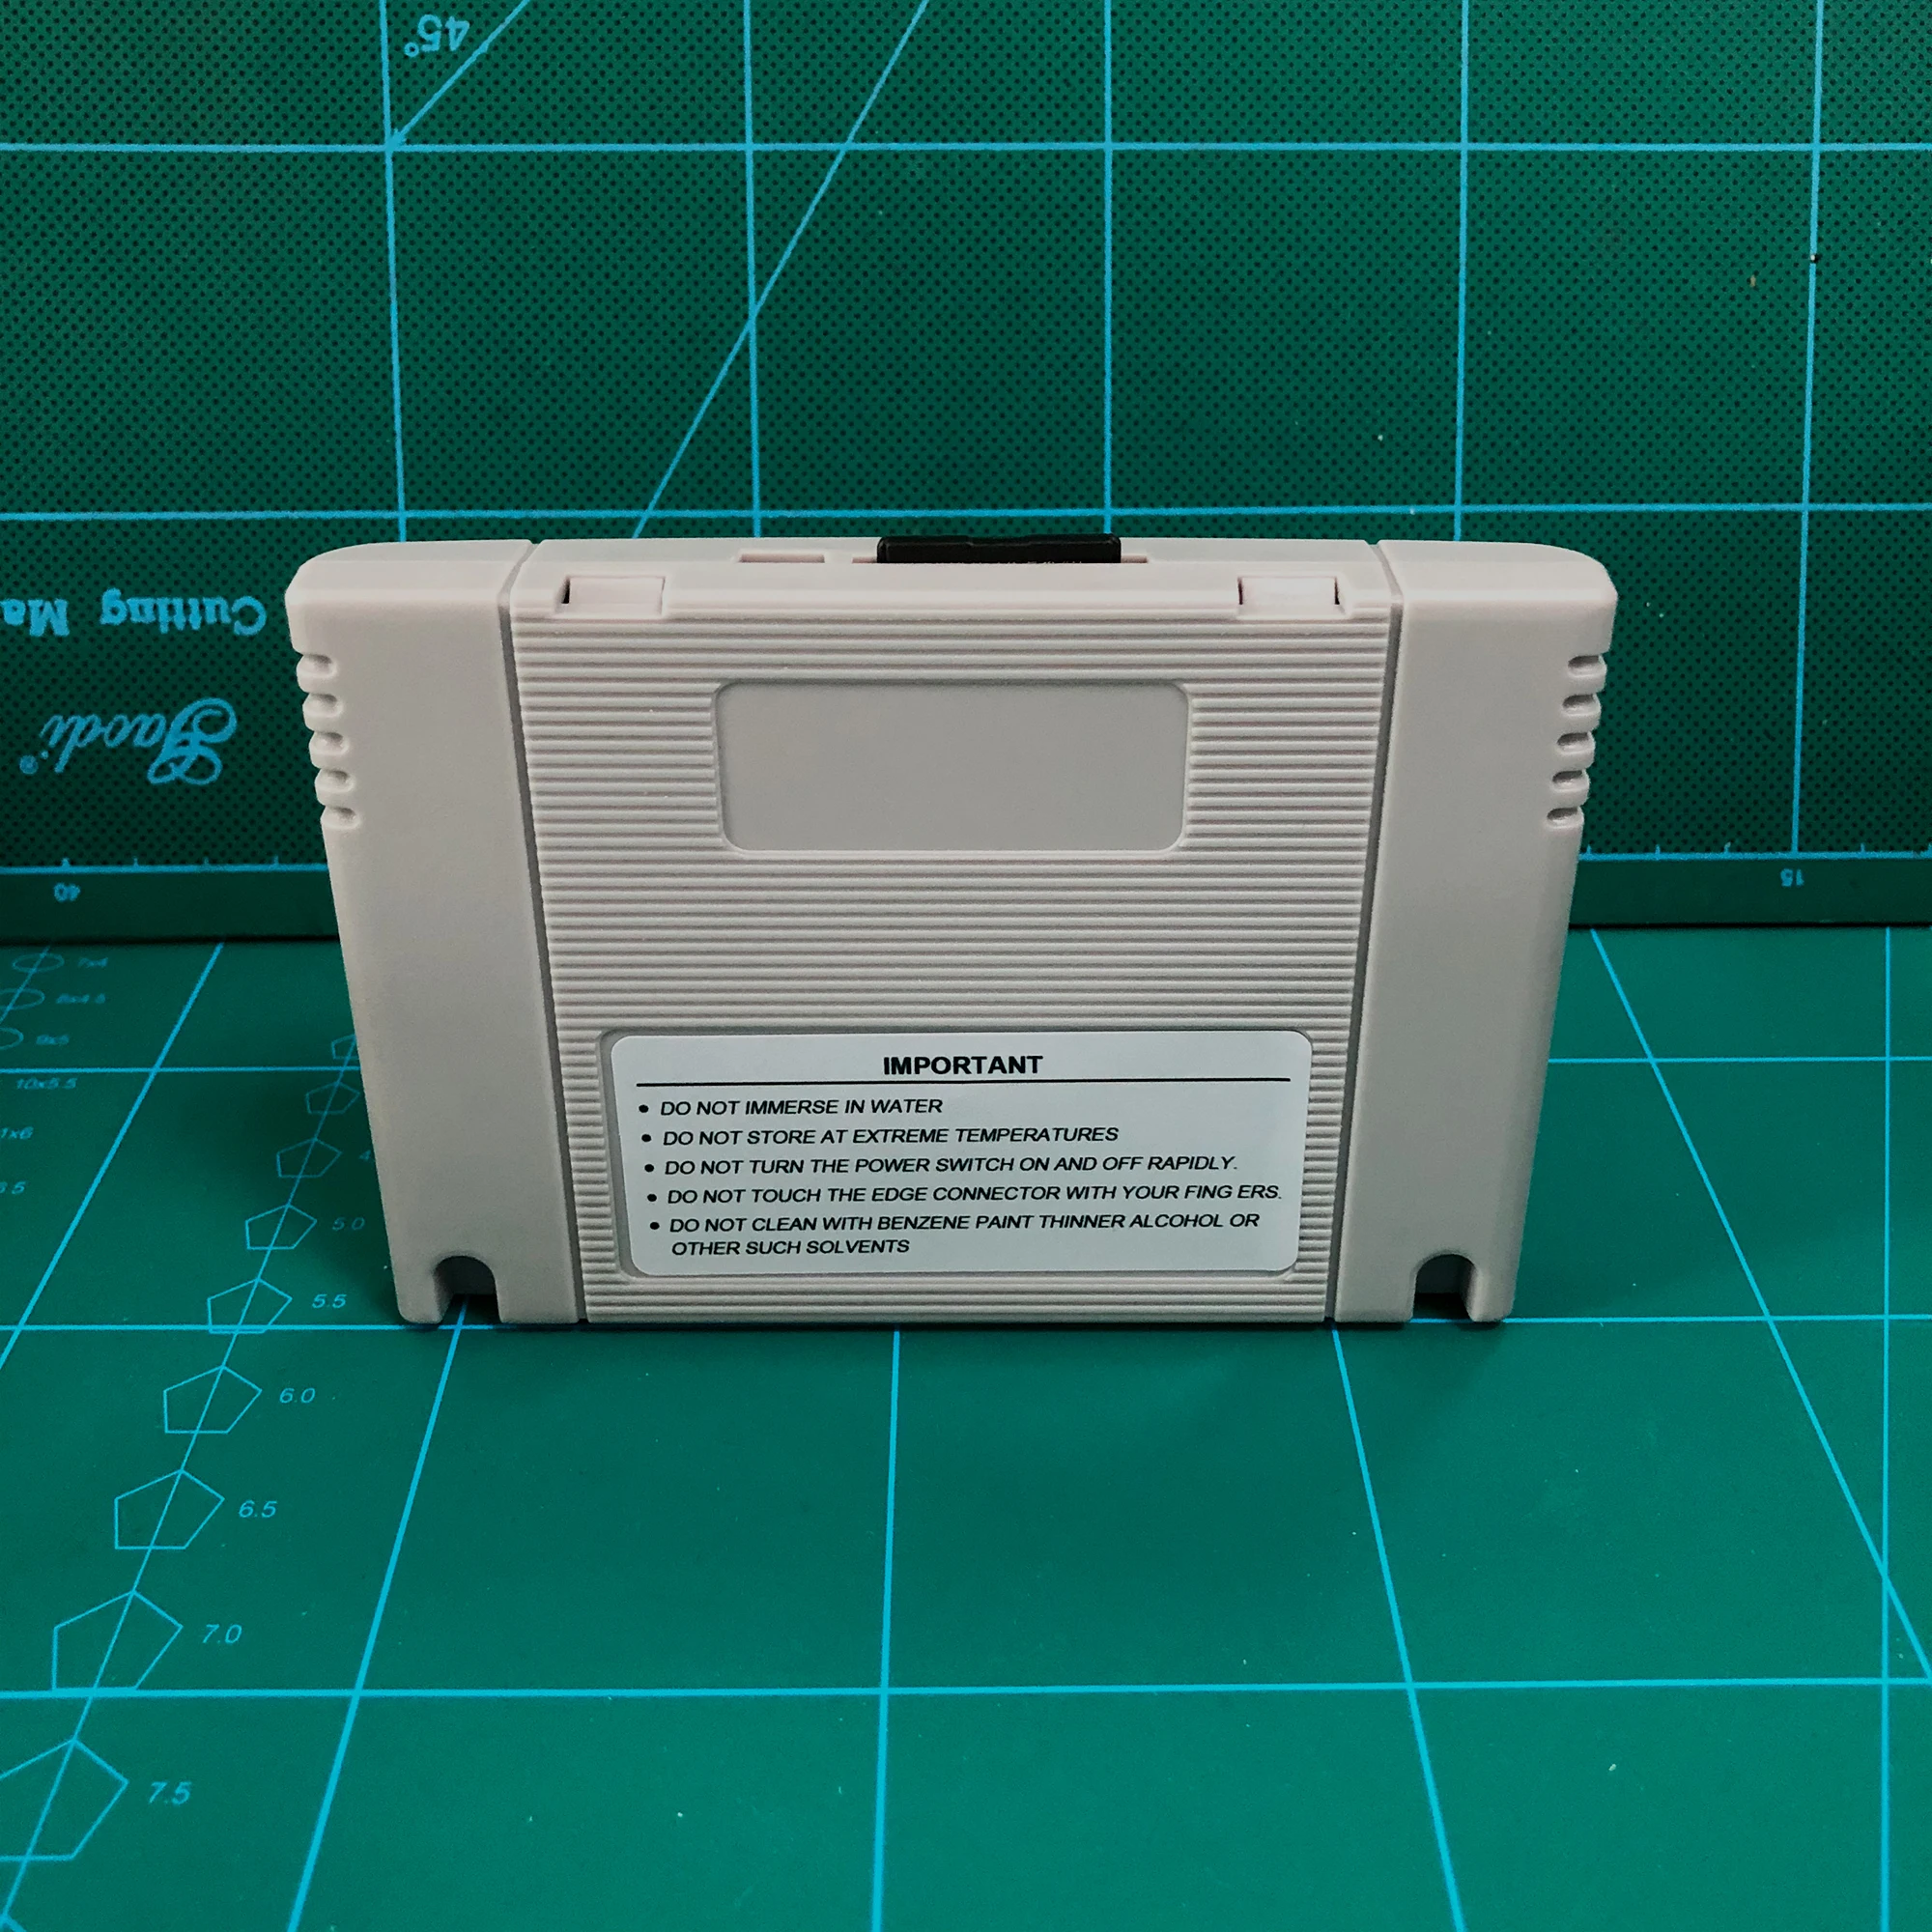 KY/Технология Супер 800 в 1 Pro Remix карточная игра для SNES 16 бит игровой консоли